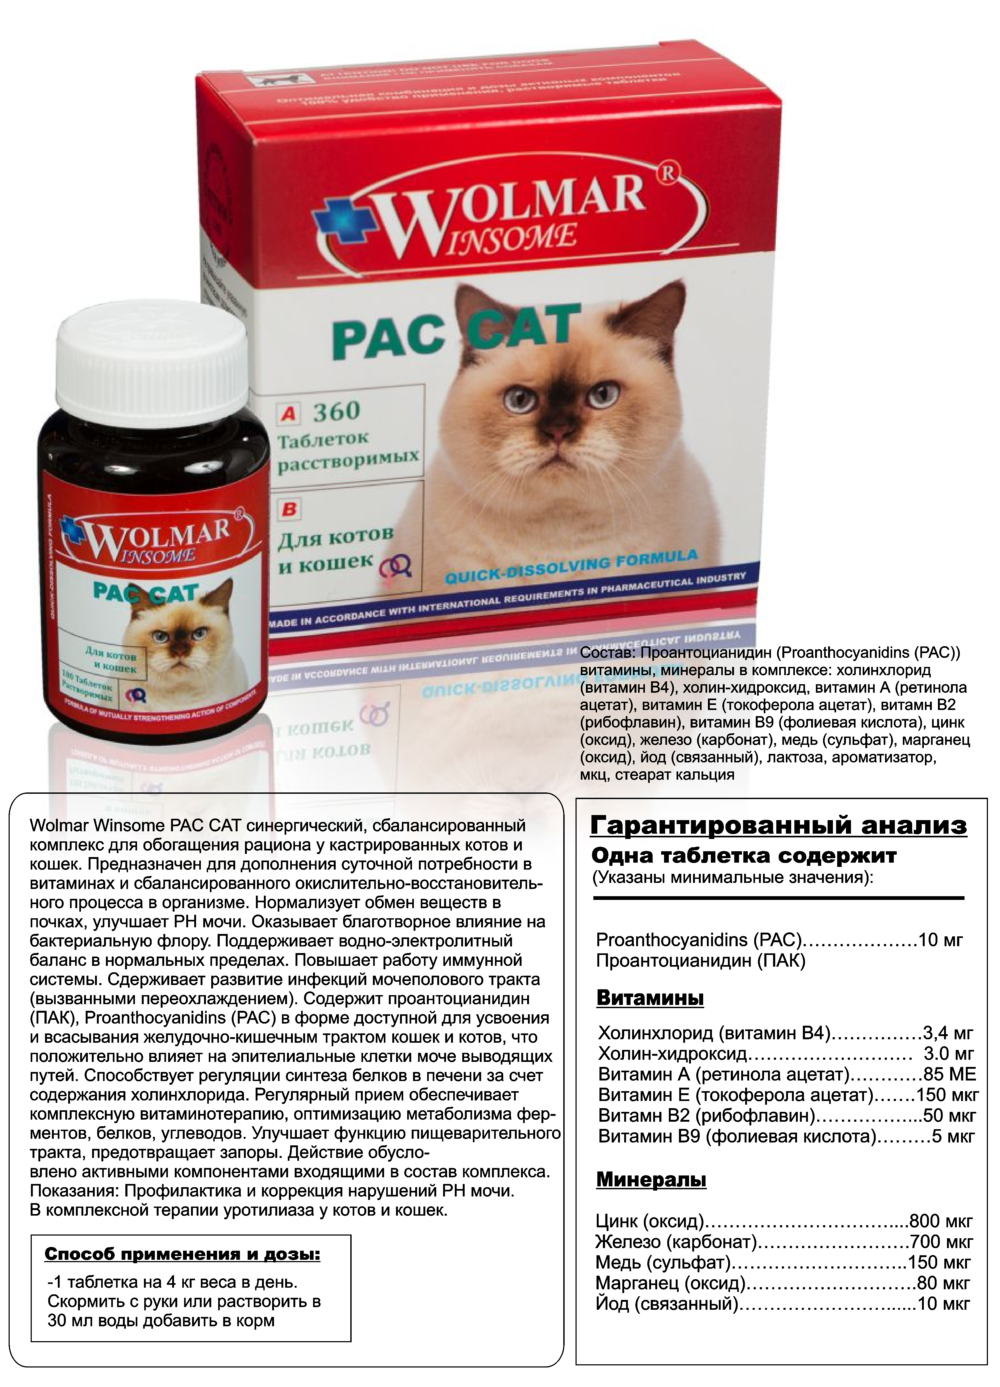 Заболевание печени у кота или кошки При мочекаменной болезни котов